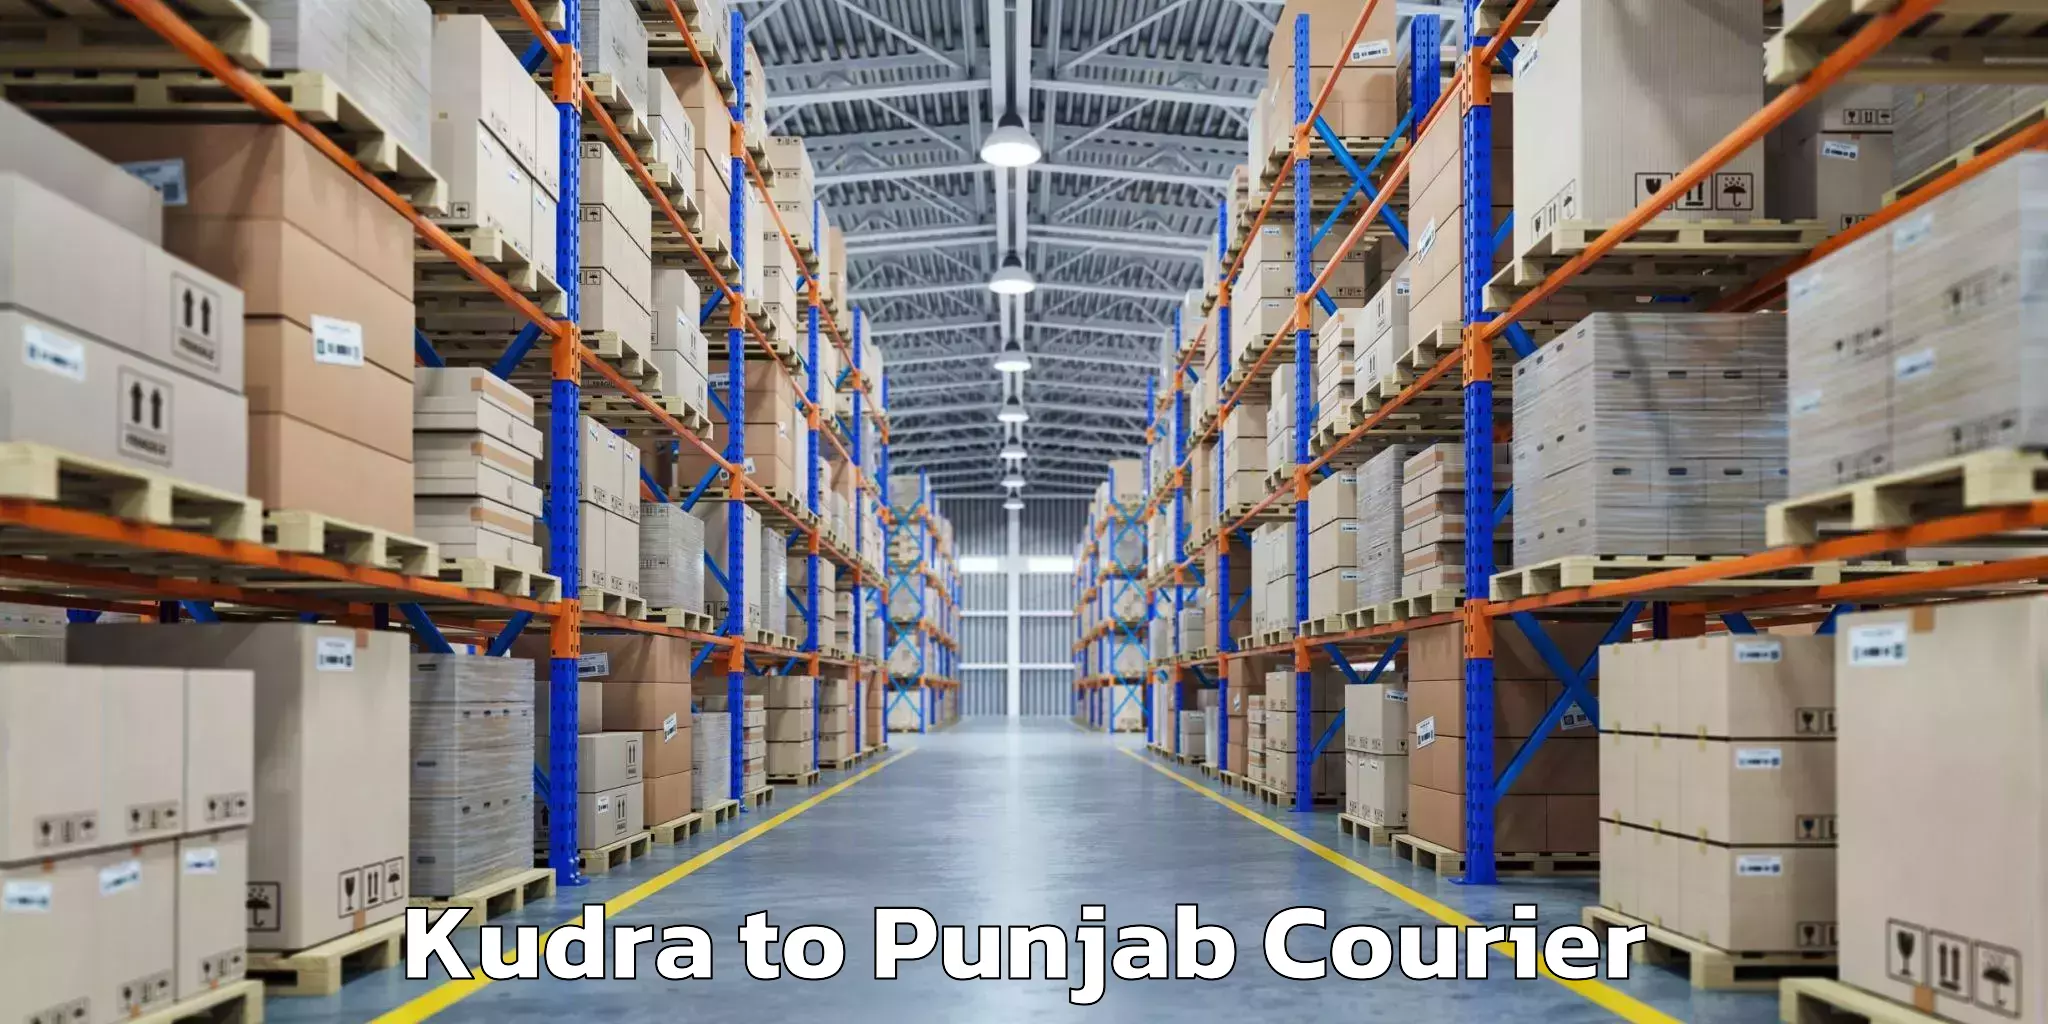 Emergency baggage service Kudra to Punjab